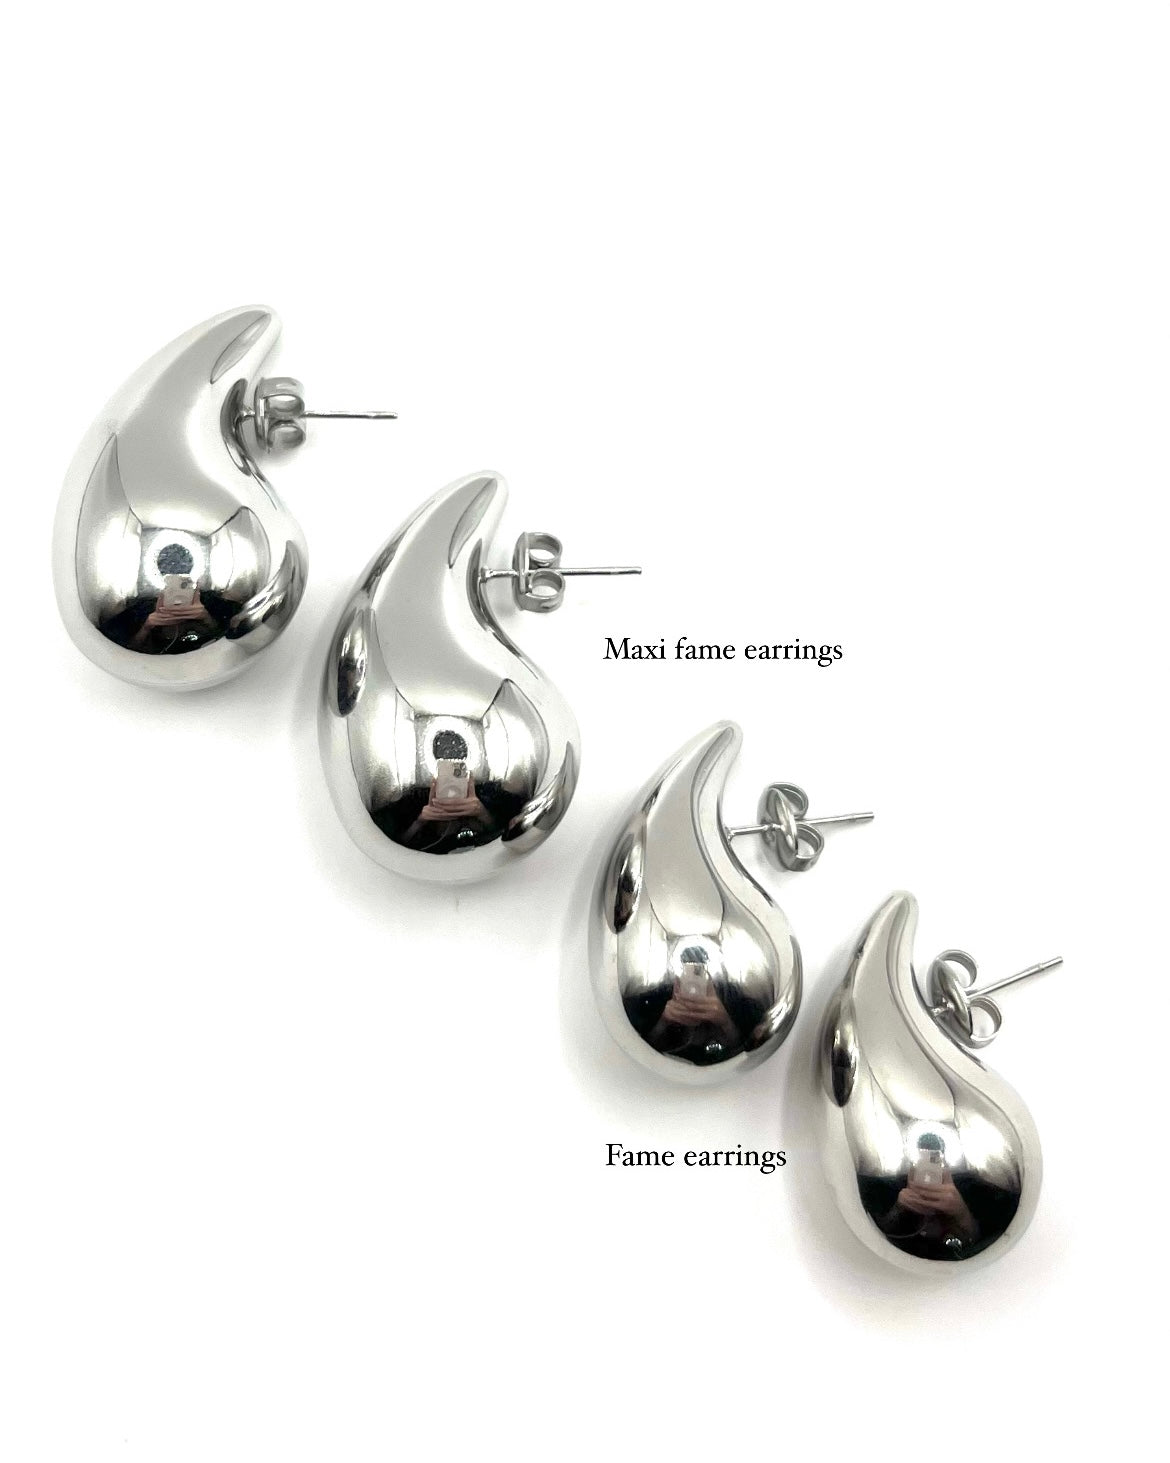 Fame earrings silver